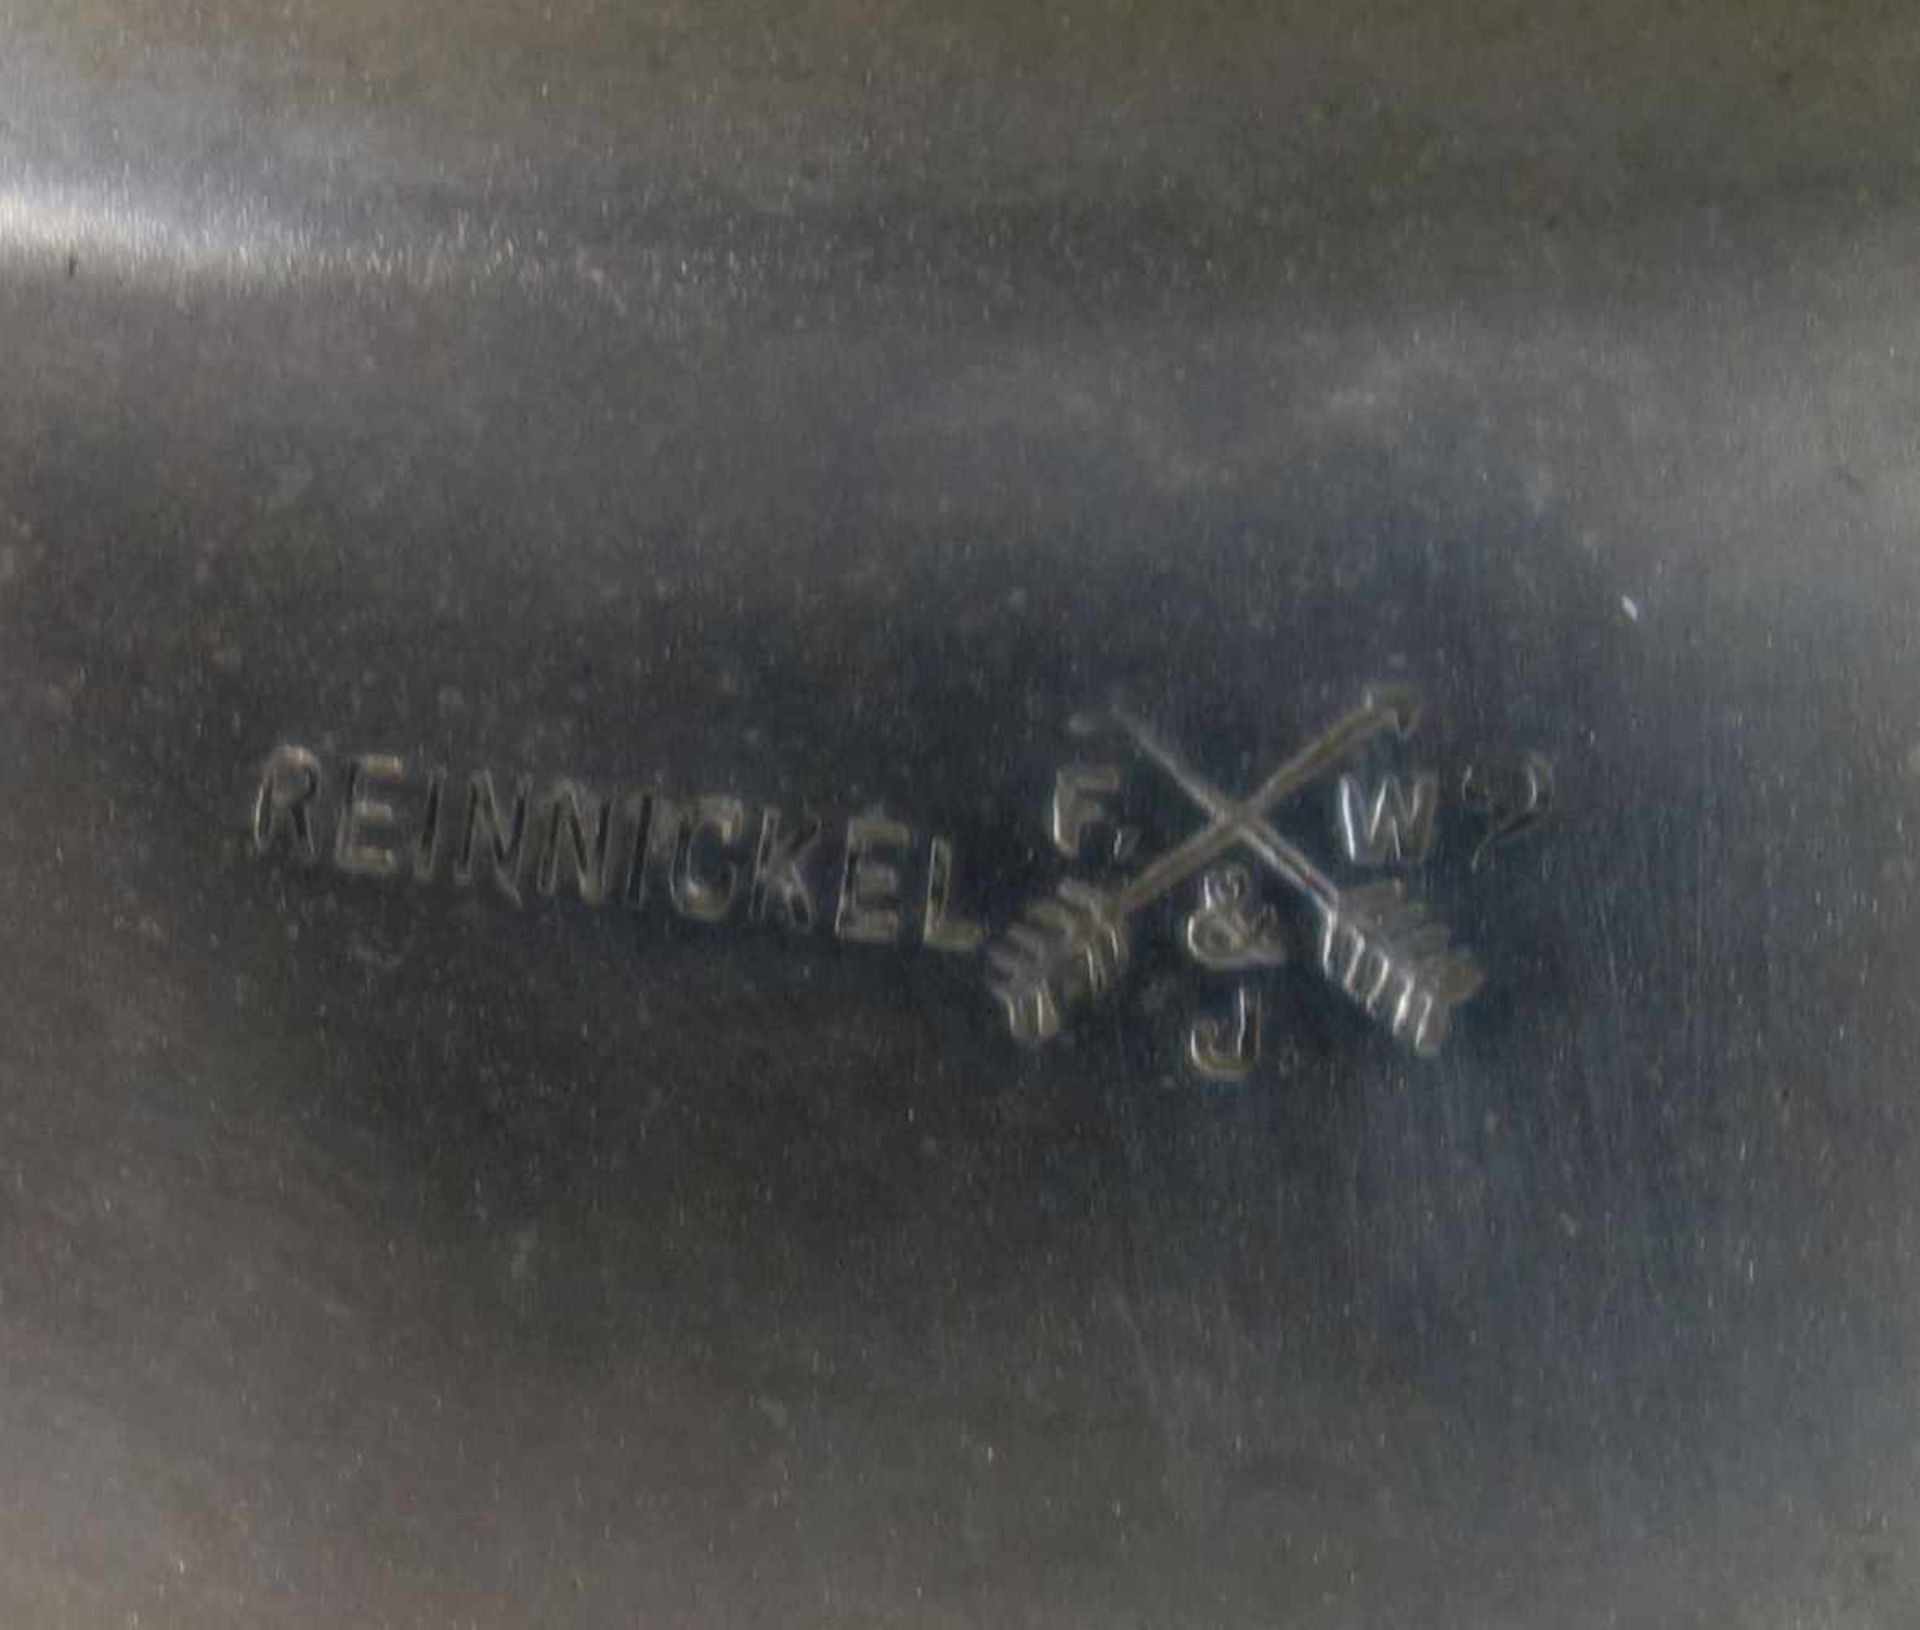 JAGDLICHE WANDSCHALE / bowl, 20. Jh., Nickel, deutsch, Manufaktur Vereinigte Deutsche Nickelwerke - Bild 4 aus 4